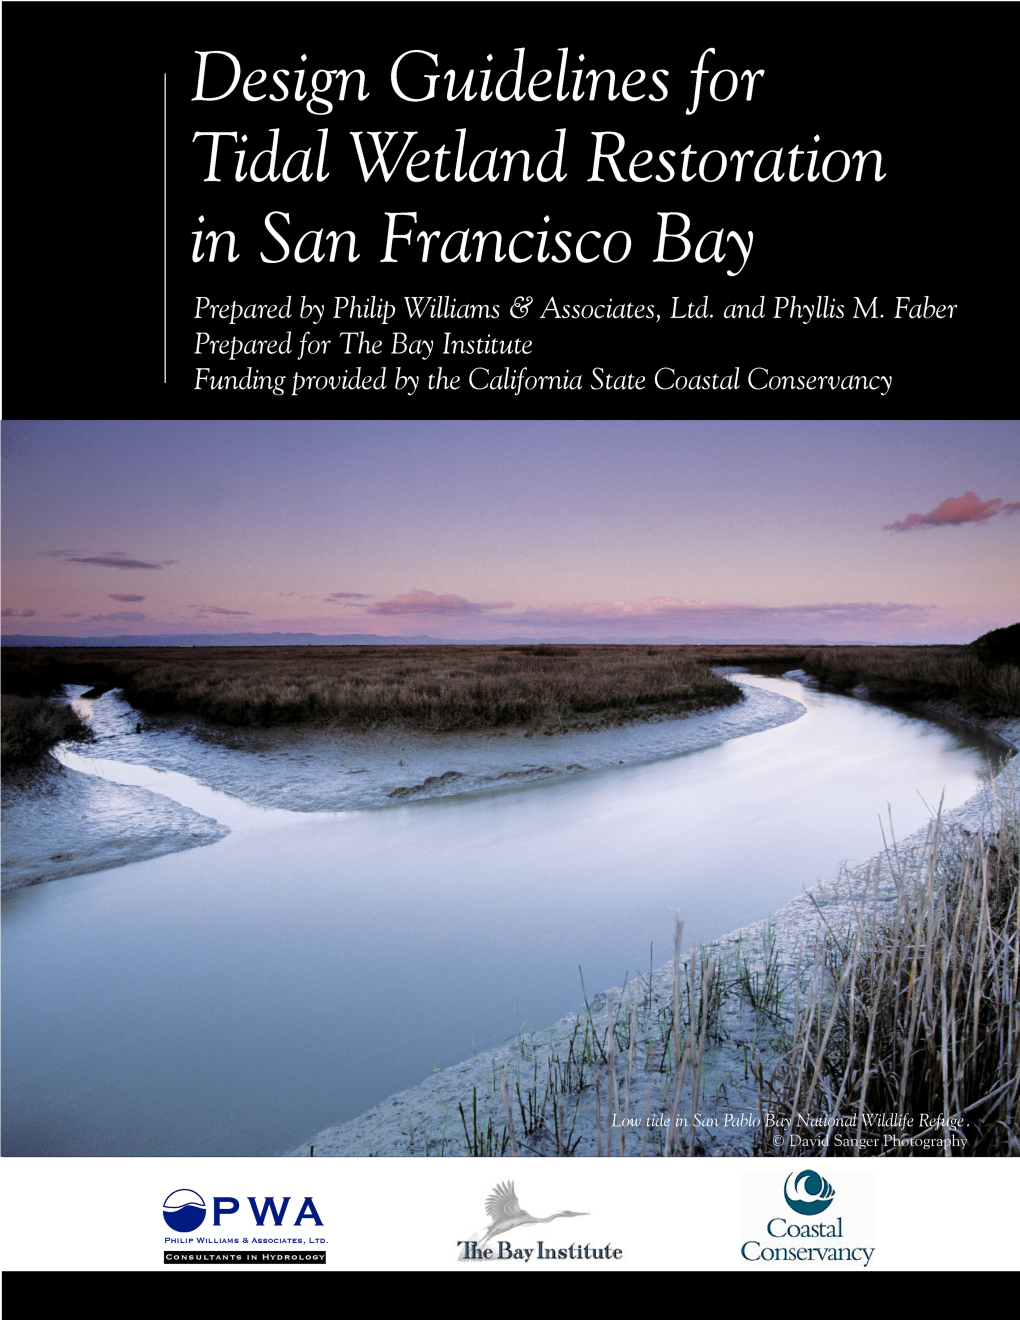 Design Guidelines for Tidal Wetland Restoration in San Francisco Bay